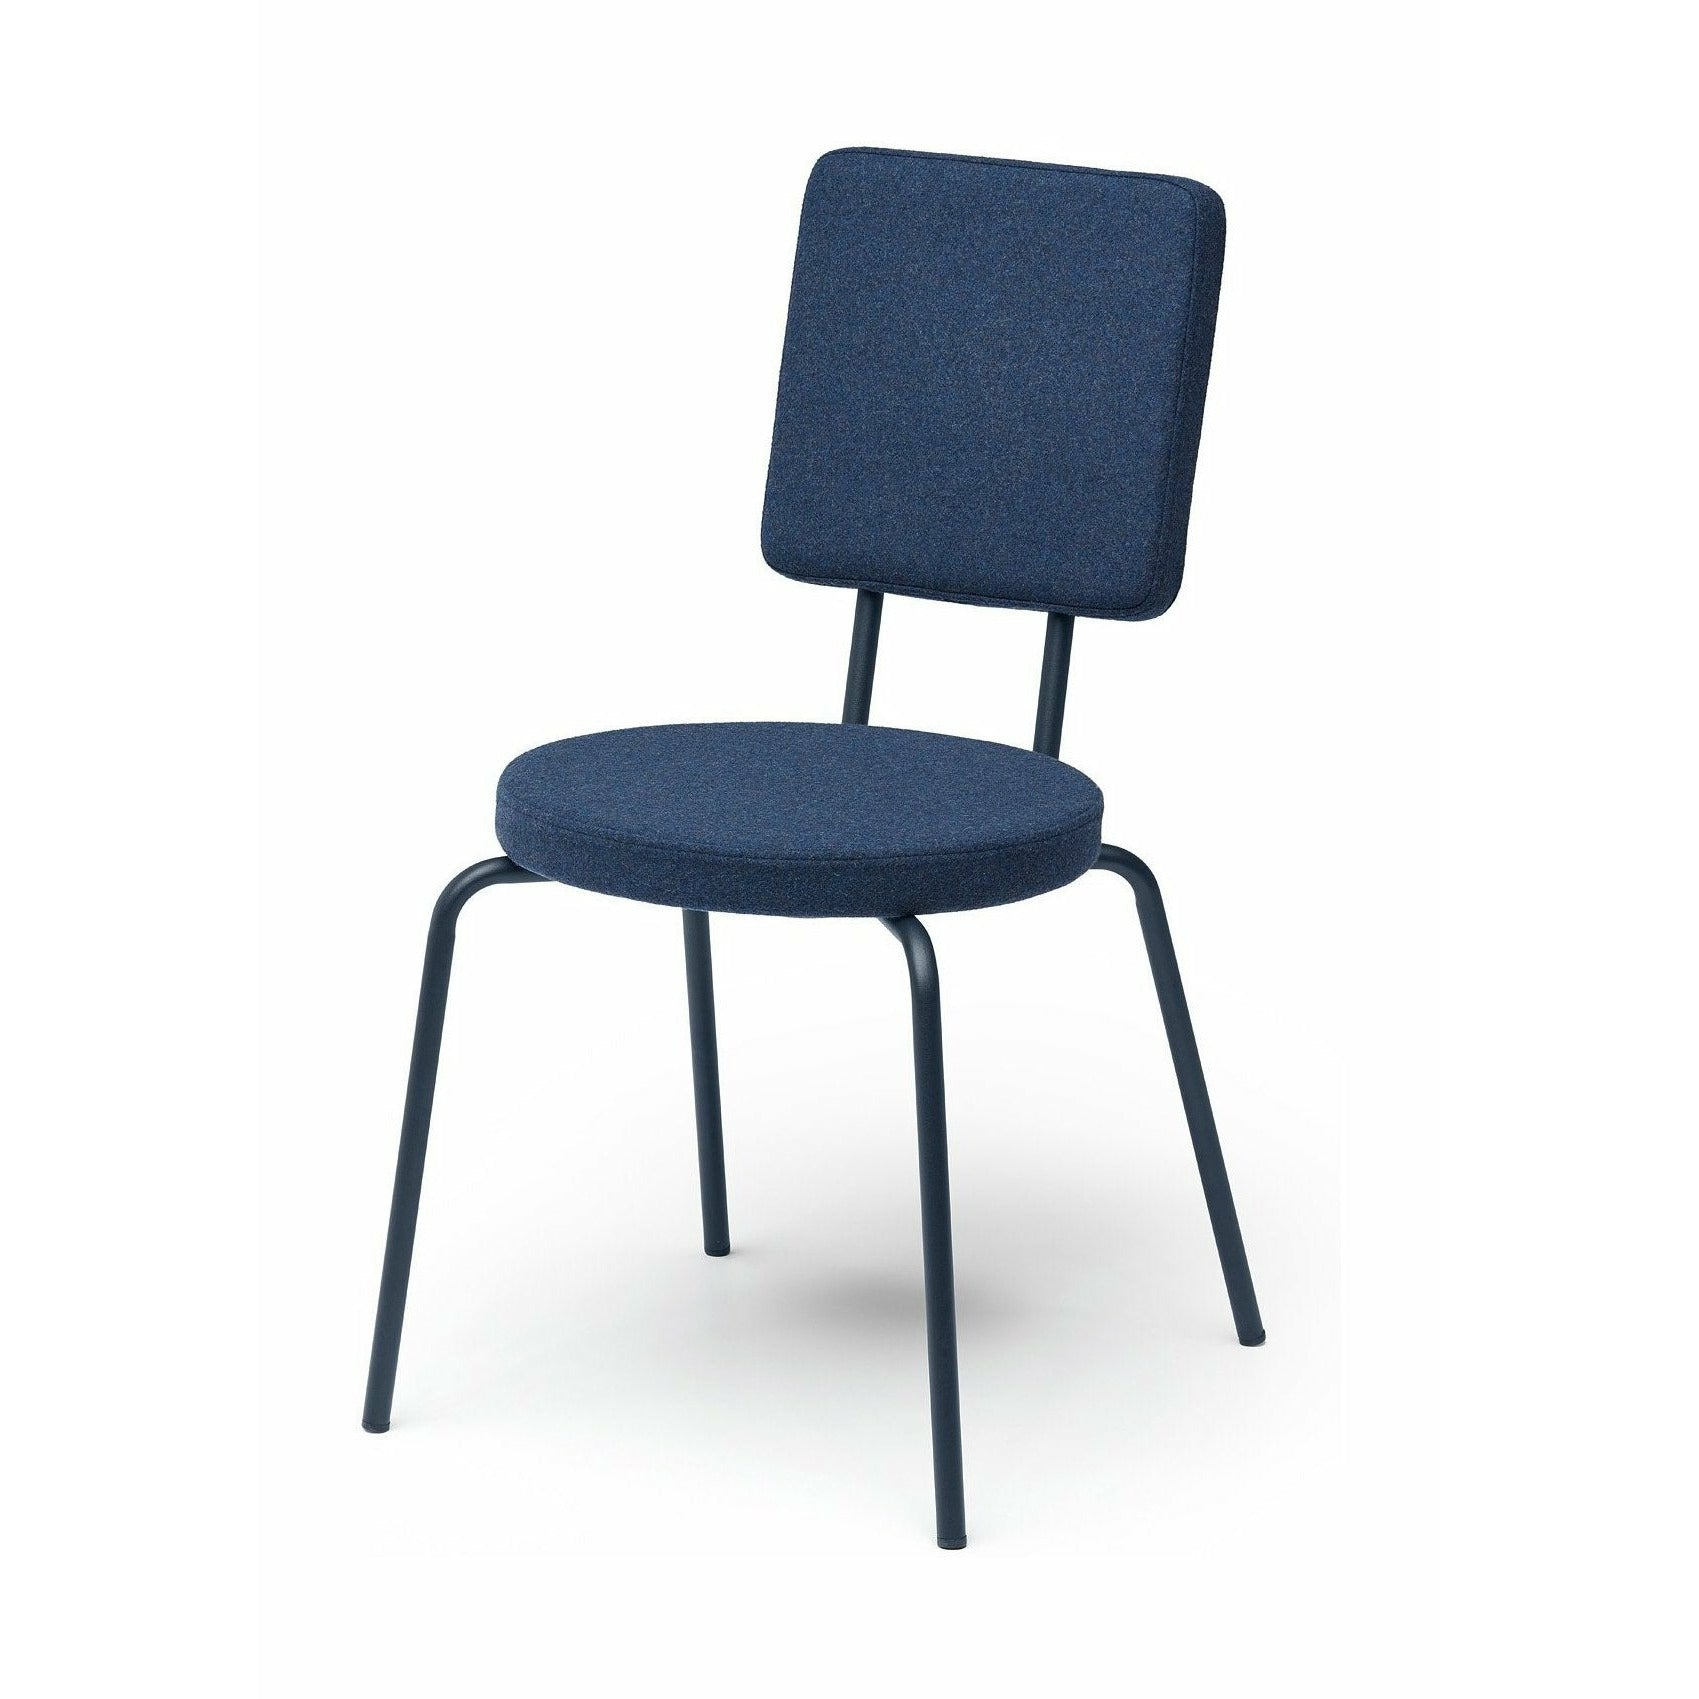 Puik Option chaise siège rond / dossier carré, bleu foncé